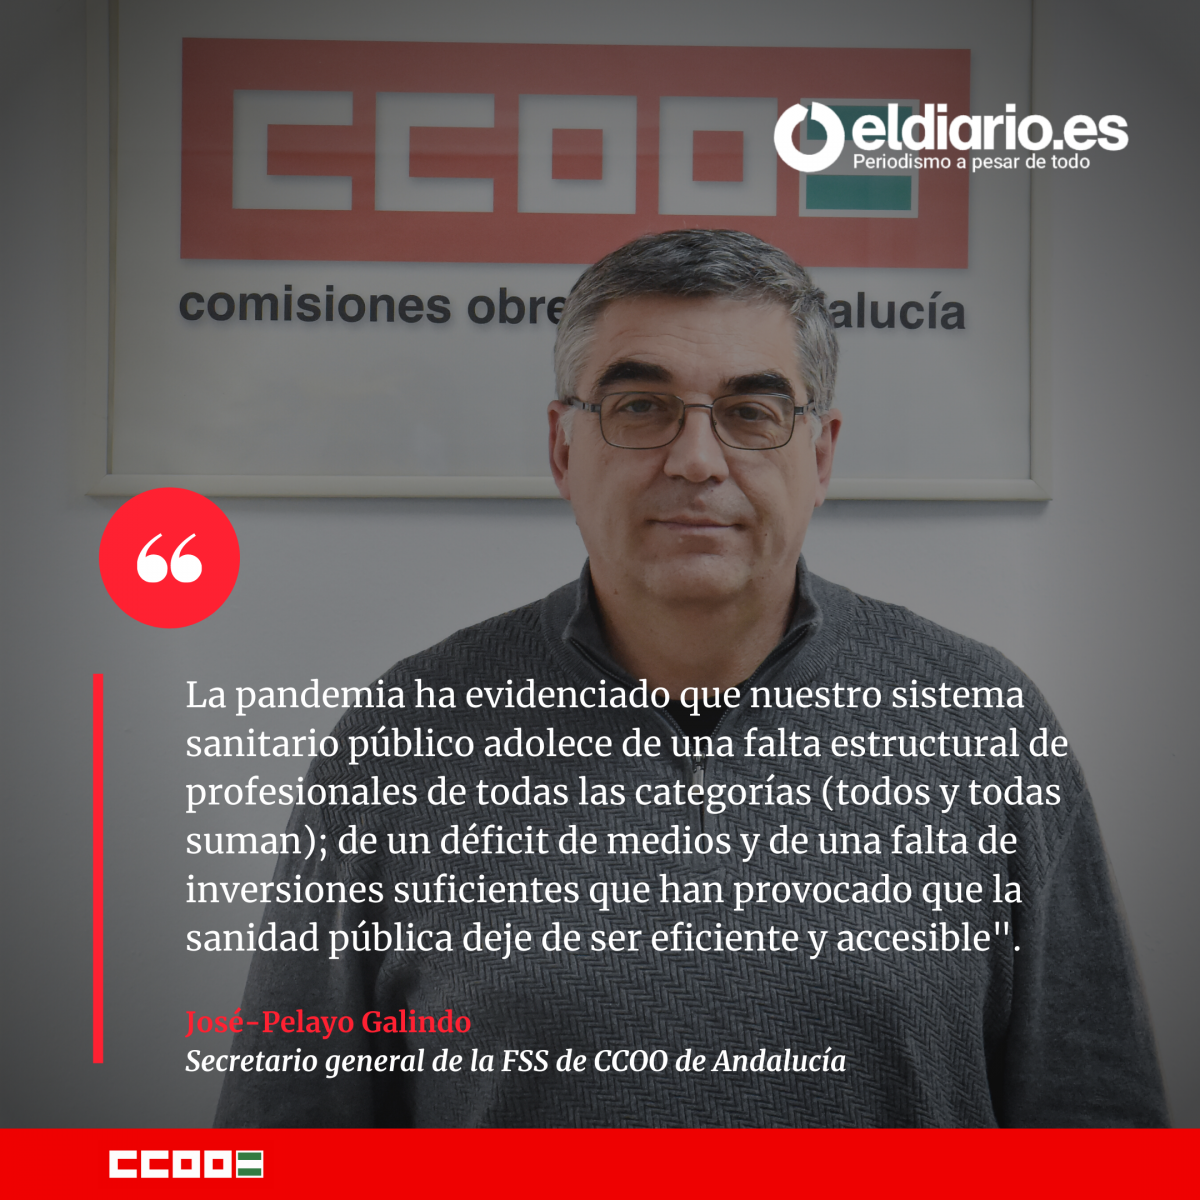 José-Pelayo Galindo, secretario general de la Federación de Sanidad de CCOO de Andalucía